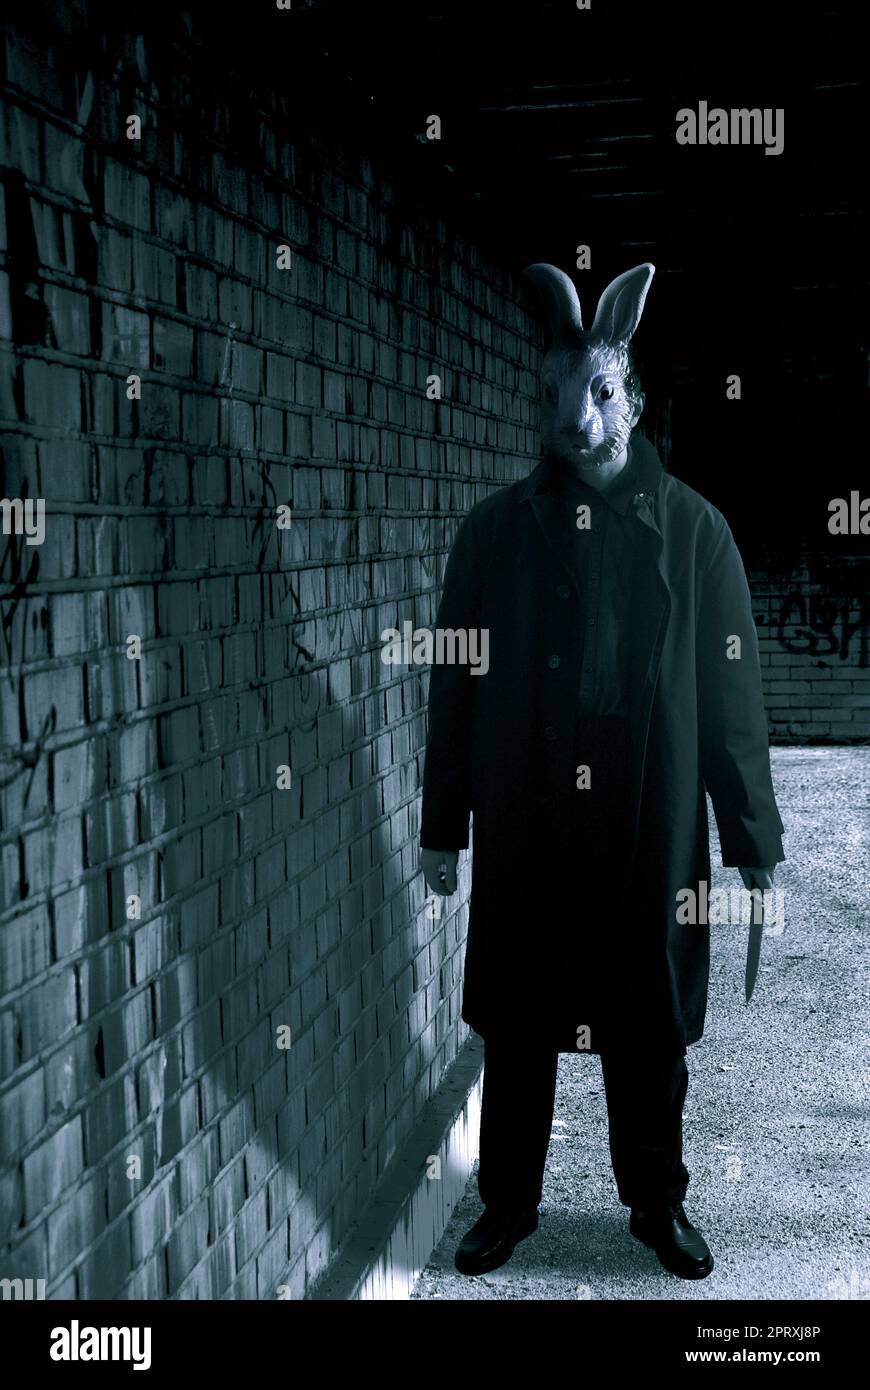 homme mystérieux avec un long manteau et un masque de lapin près d'un mur, un couteau en main Banque D'Images